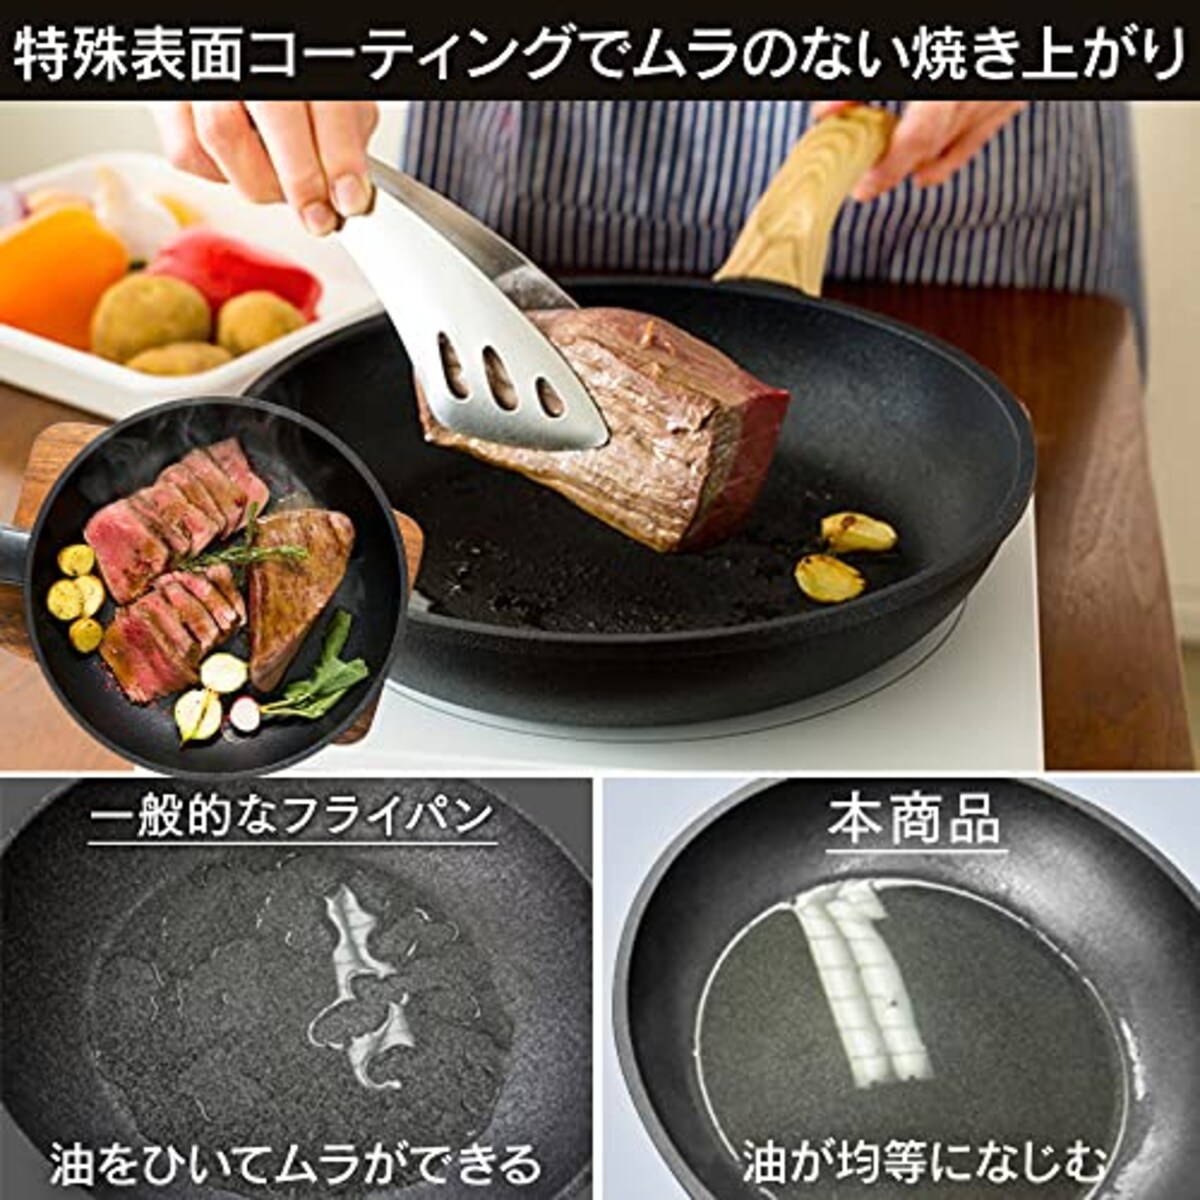  アイリスオーヤマ IH 対応 フライパン 20cm スキレットコートパン ブラック SKL-20IH画像5 